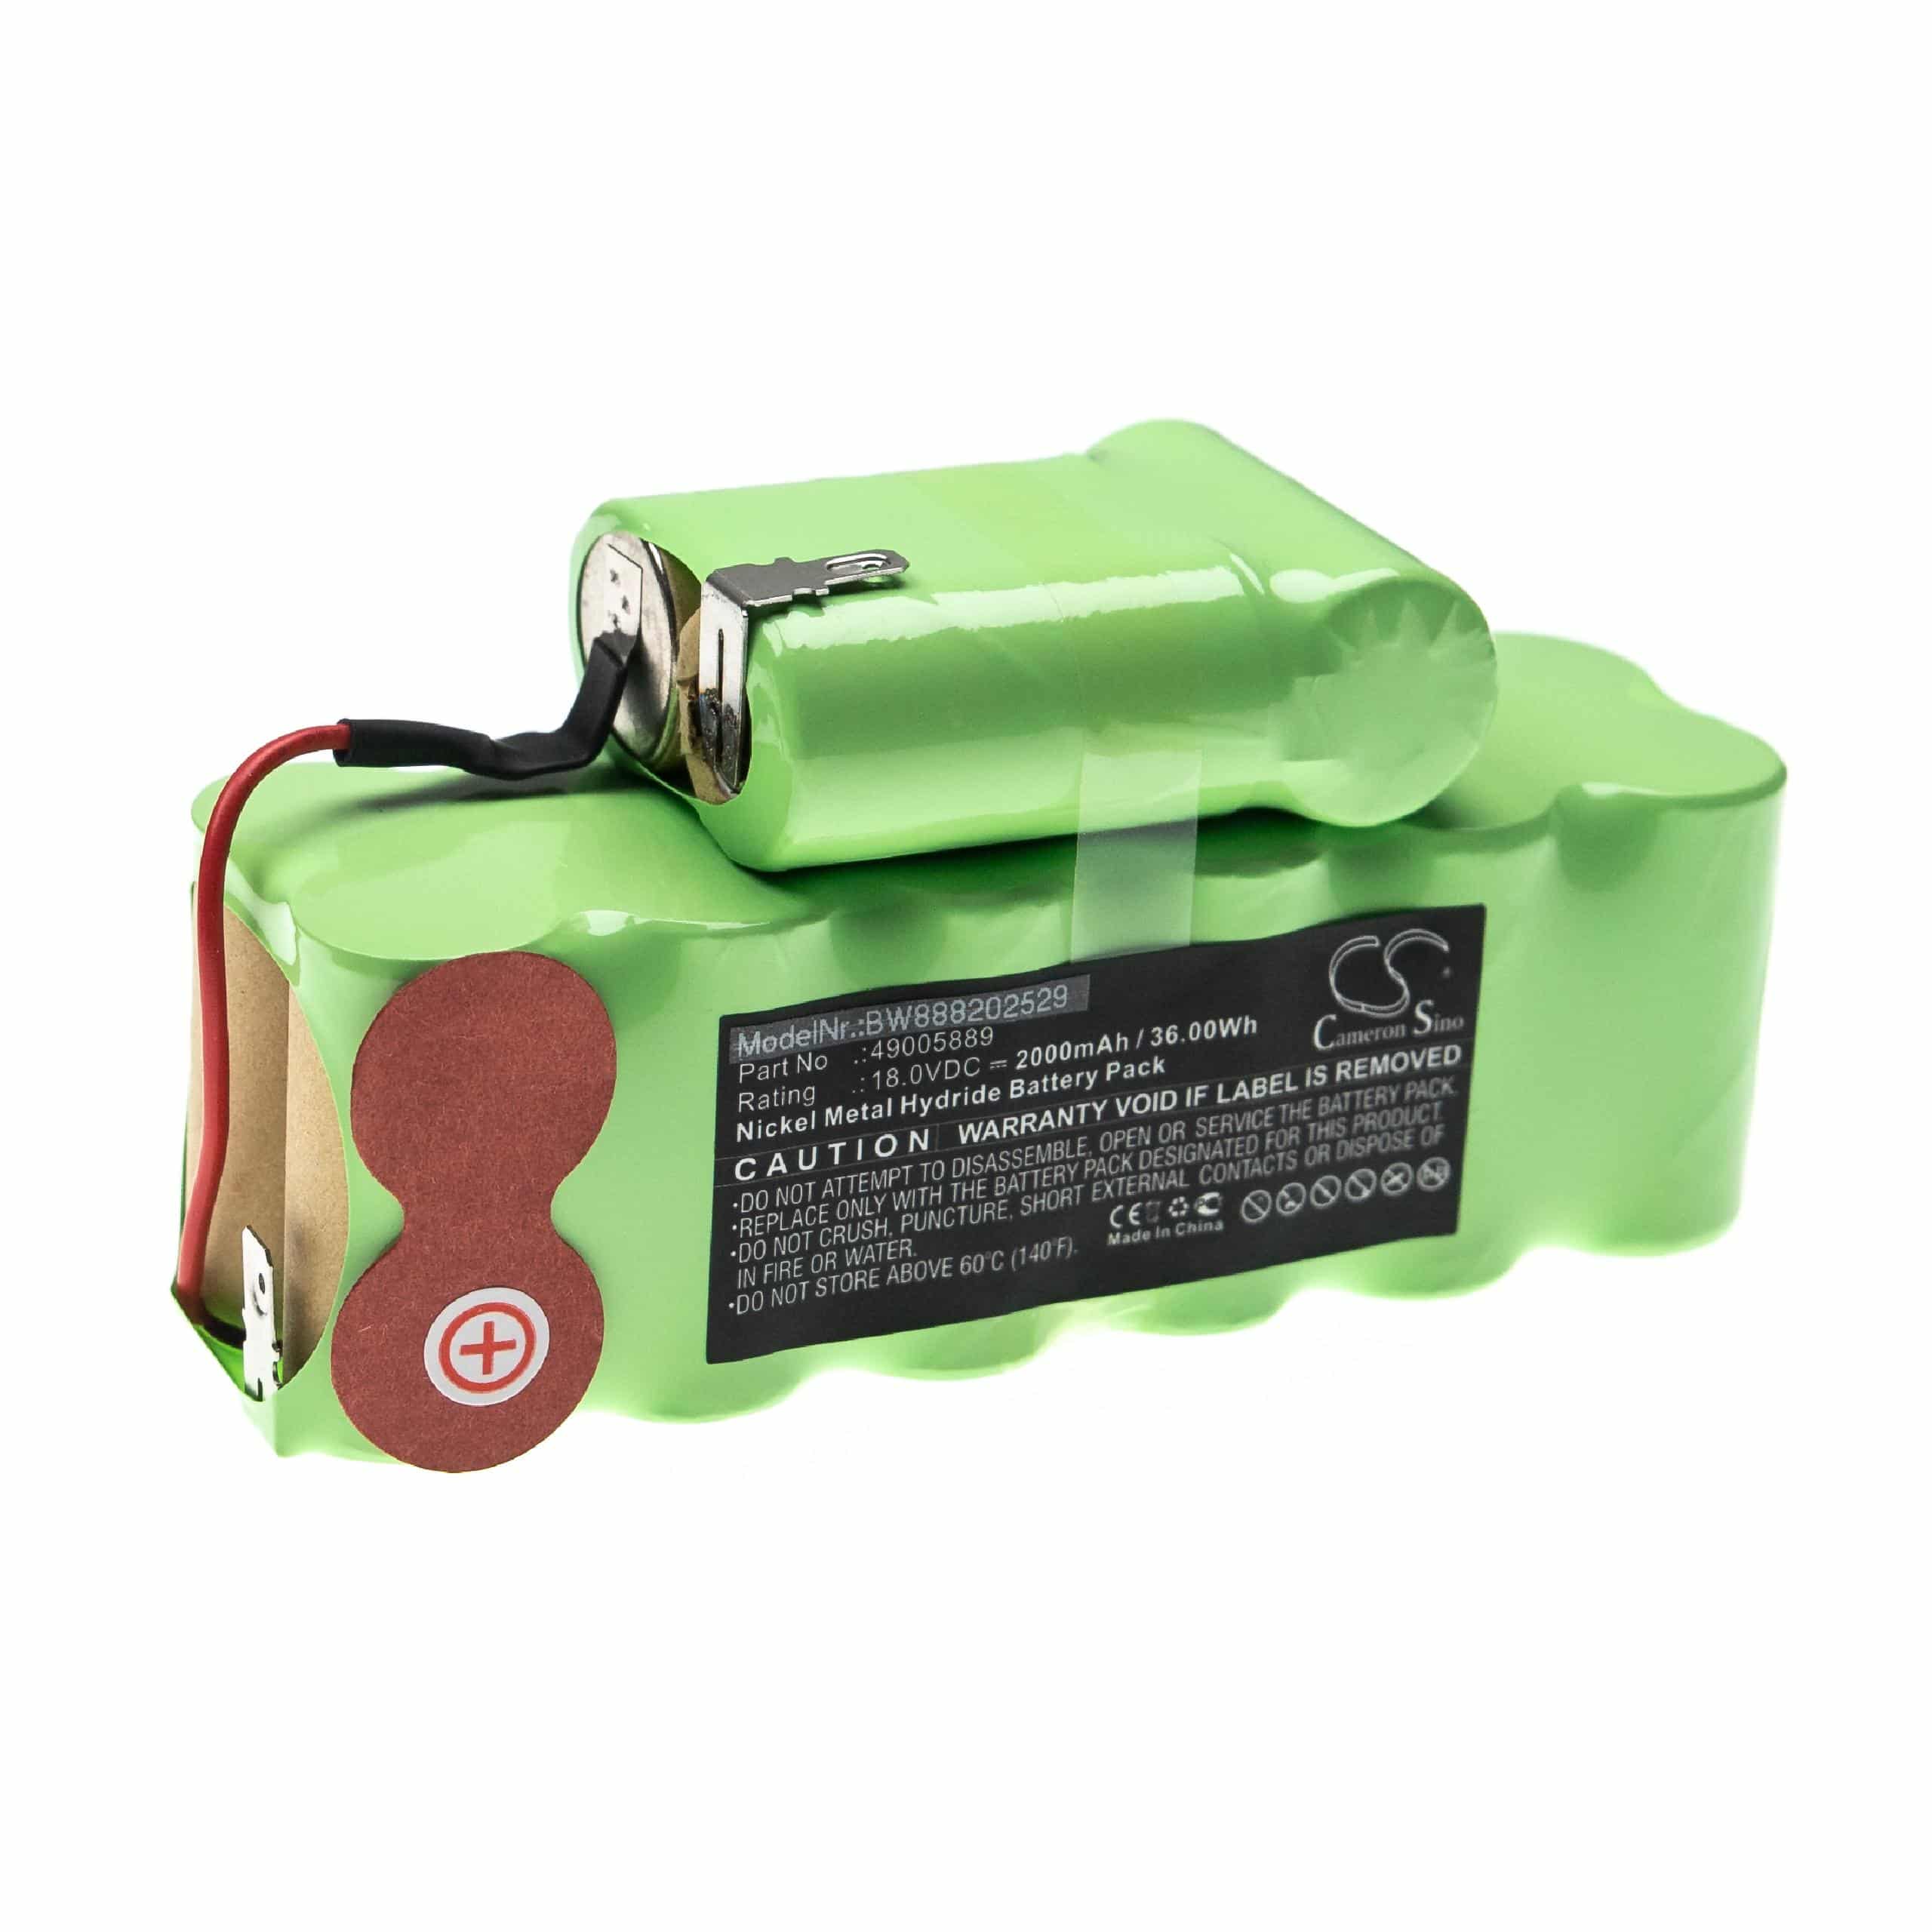 Batterie remplace Hoover 49005889 pour aspirateur - 2000mAh 18V NiMH